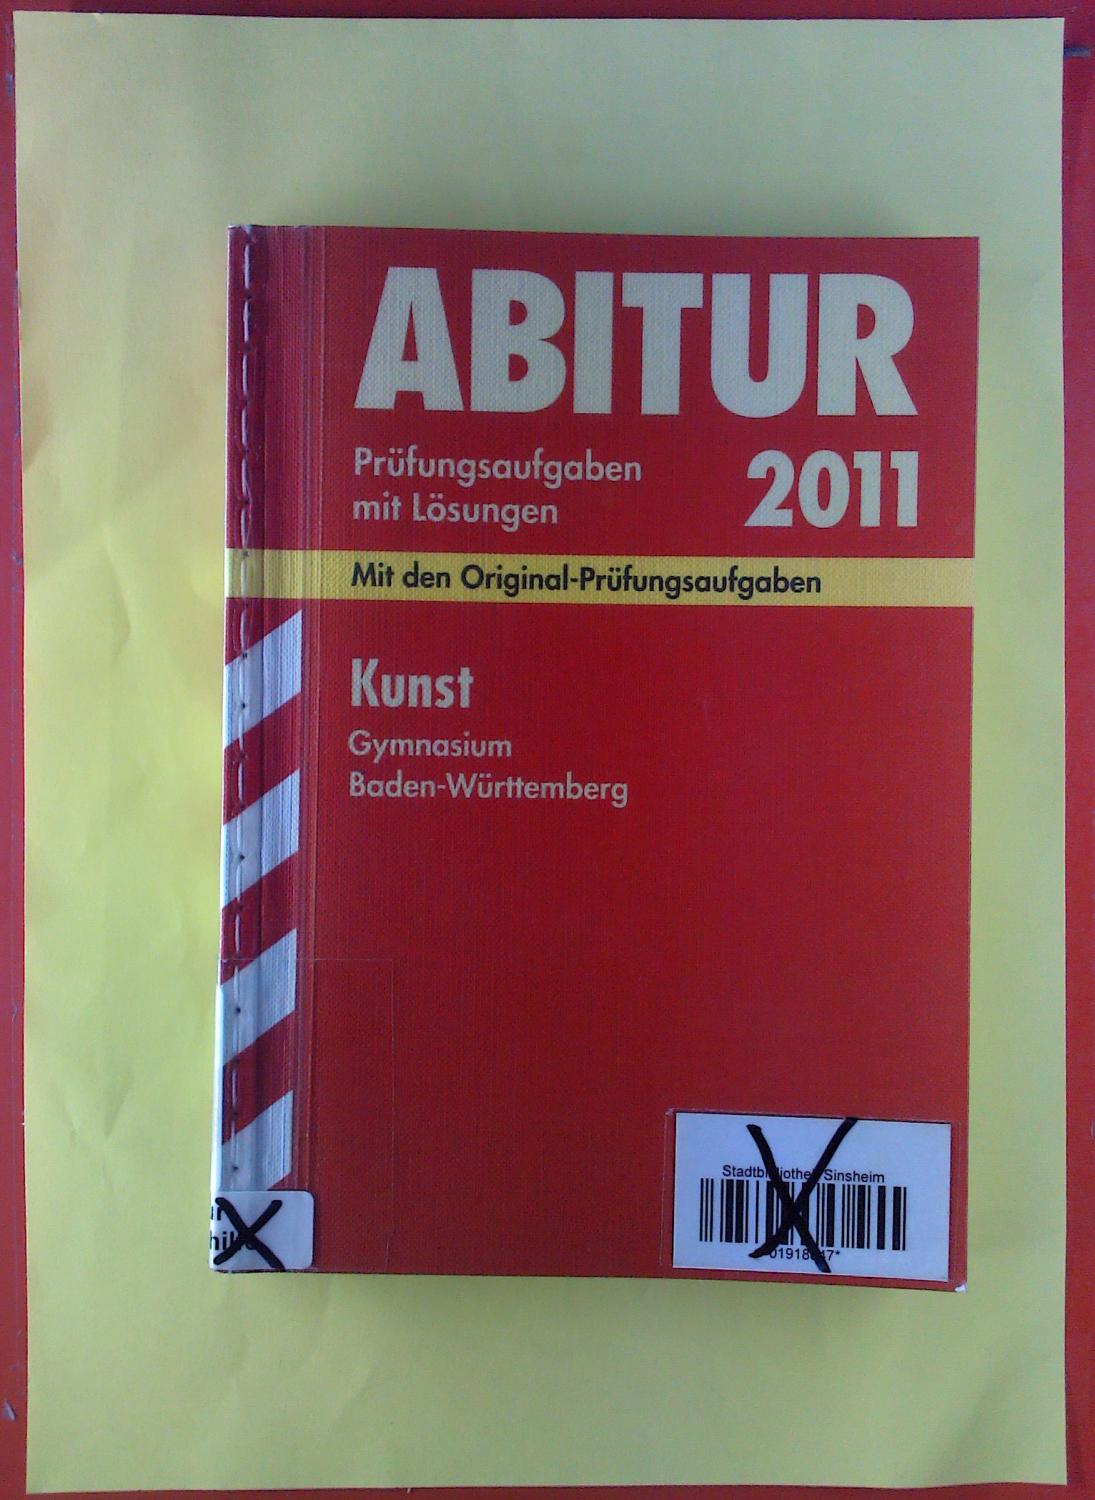 Abitur 2011. Prüfungsaufgaben mit Lösungen. Mit den Original-Prüfungsaufgaben. Kunst, Gymnasium, Baden-Württemberg, 2006 - 2010. - Raimund Ilg